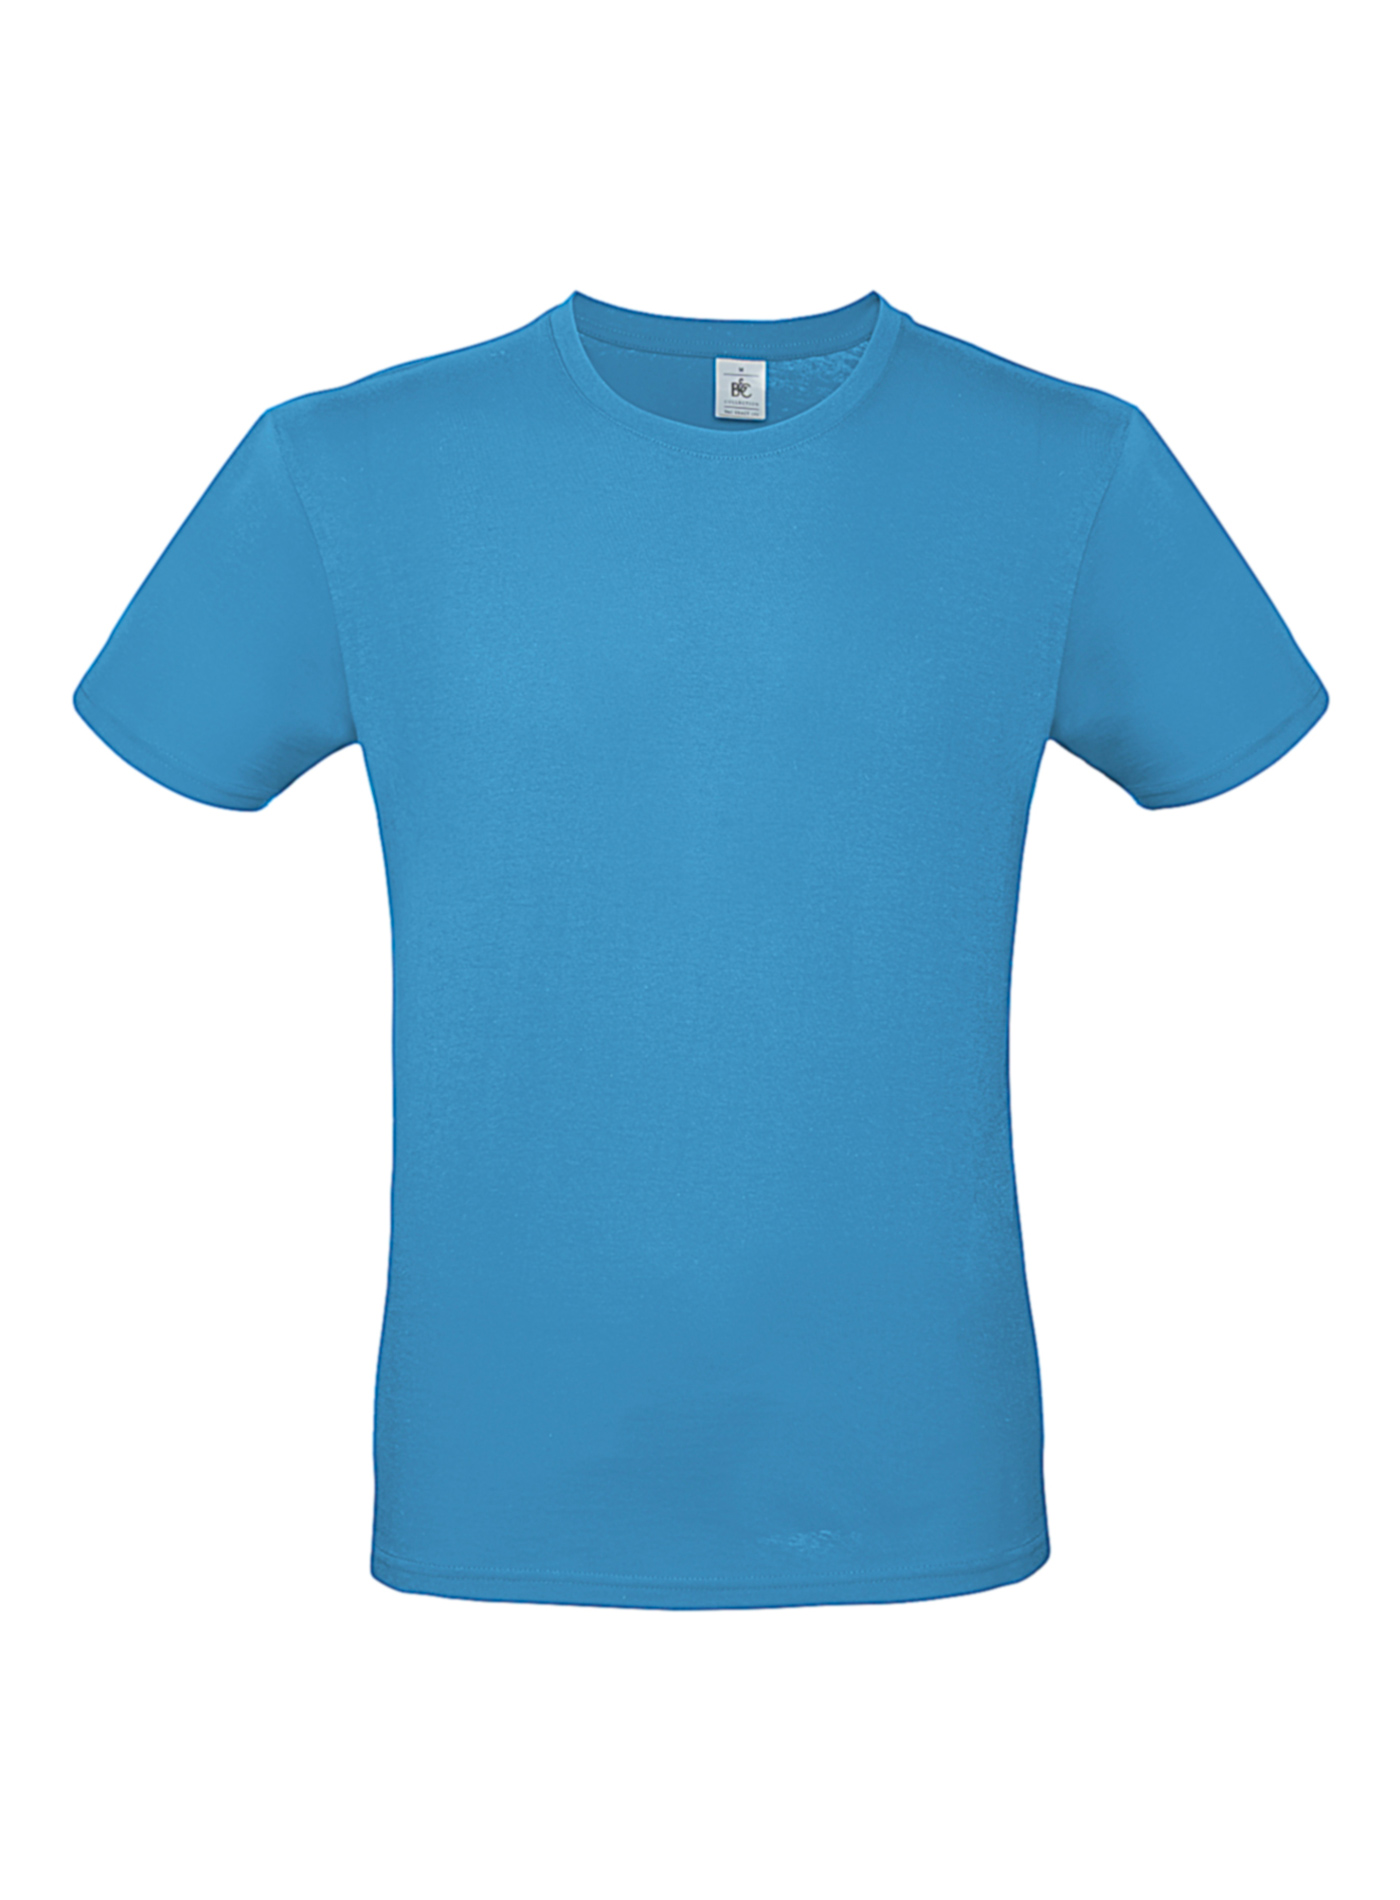 Pánské tričko B&C - Blankytně modrá M